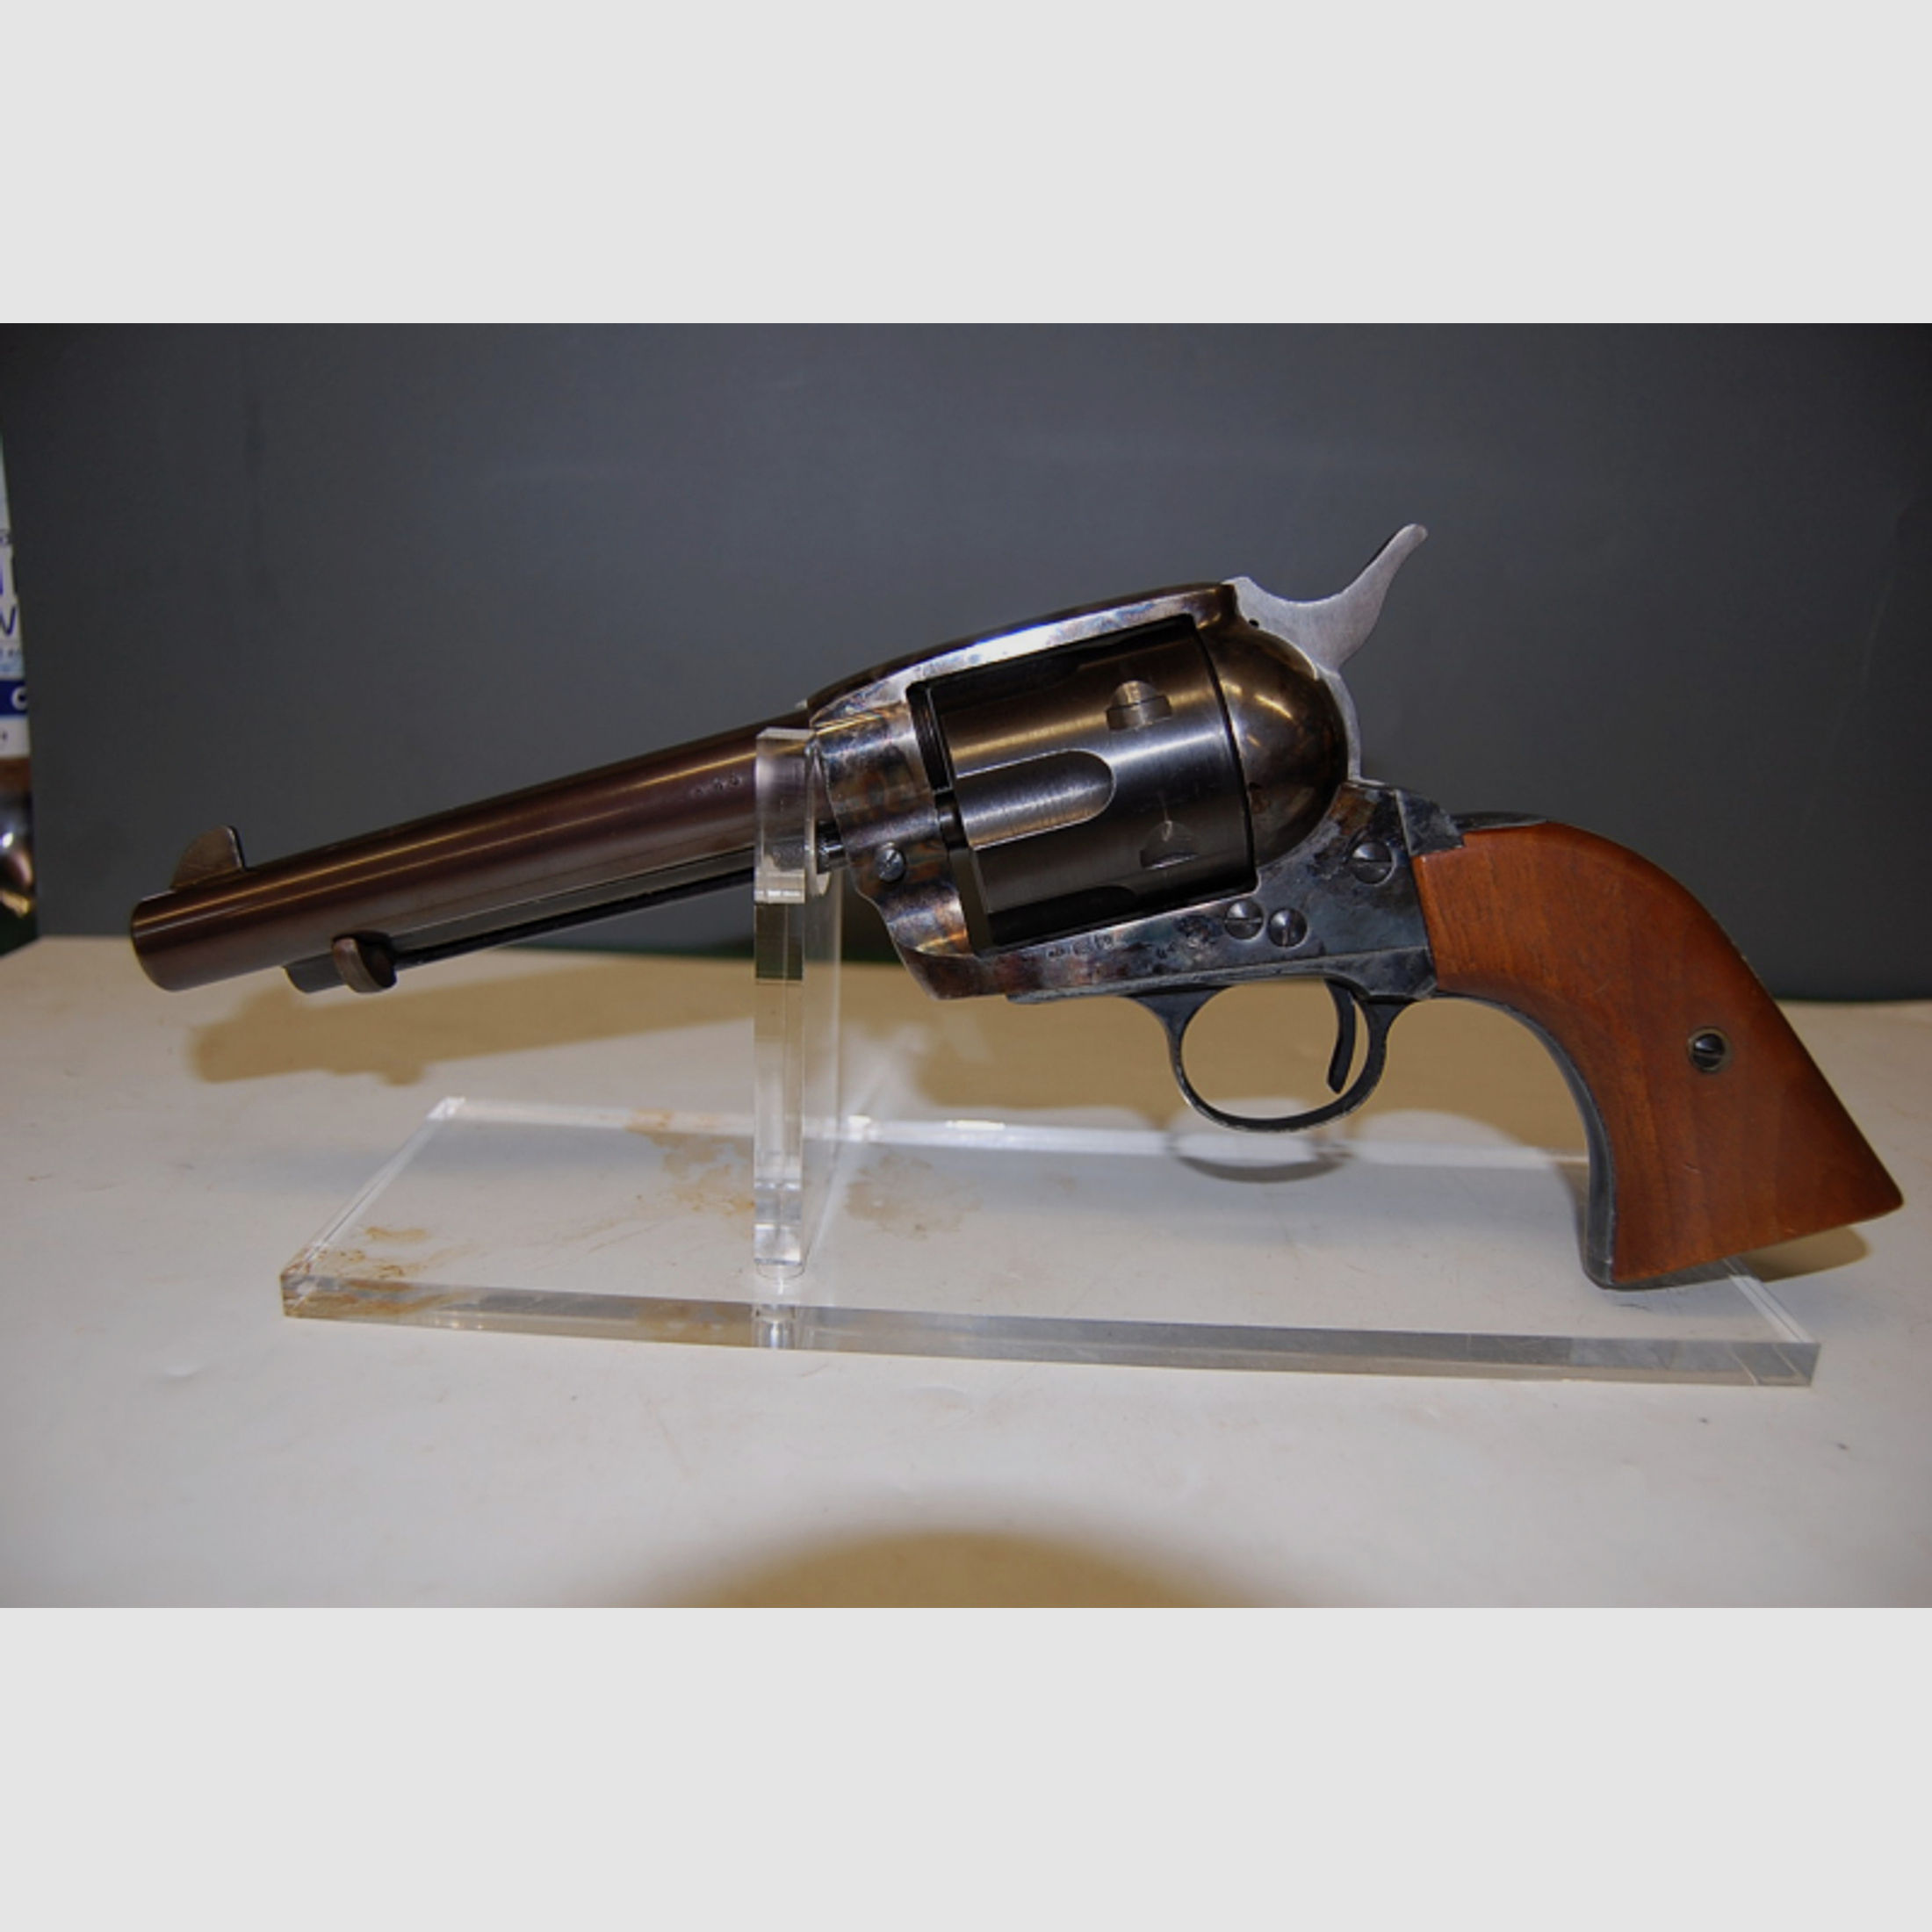 5" Colt SAA M 1873 Revolver im Kal .45Colt aus Sammlung Hersteller unbekannt